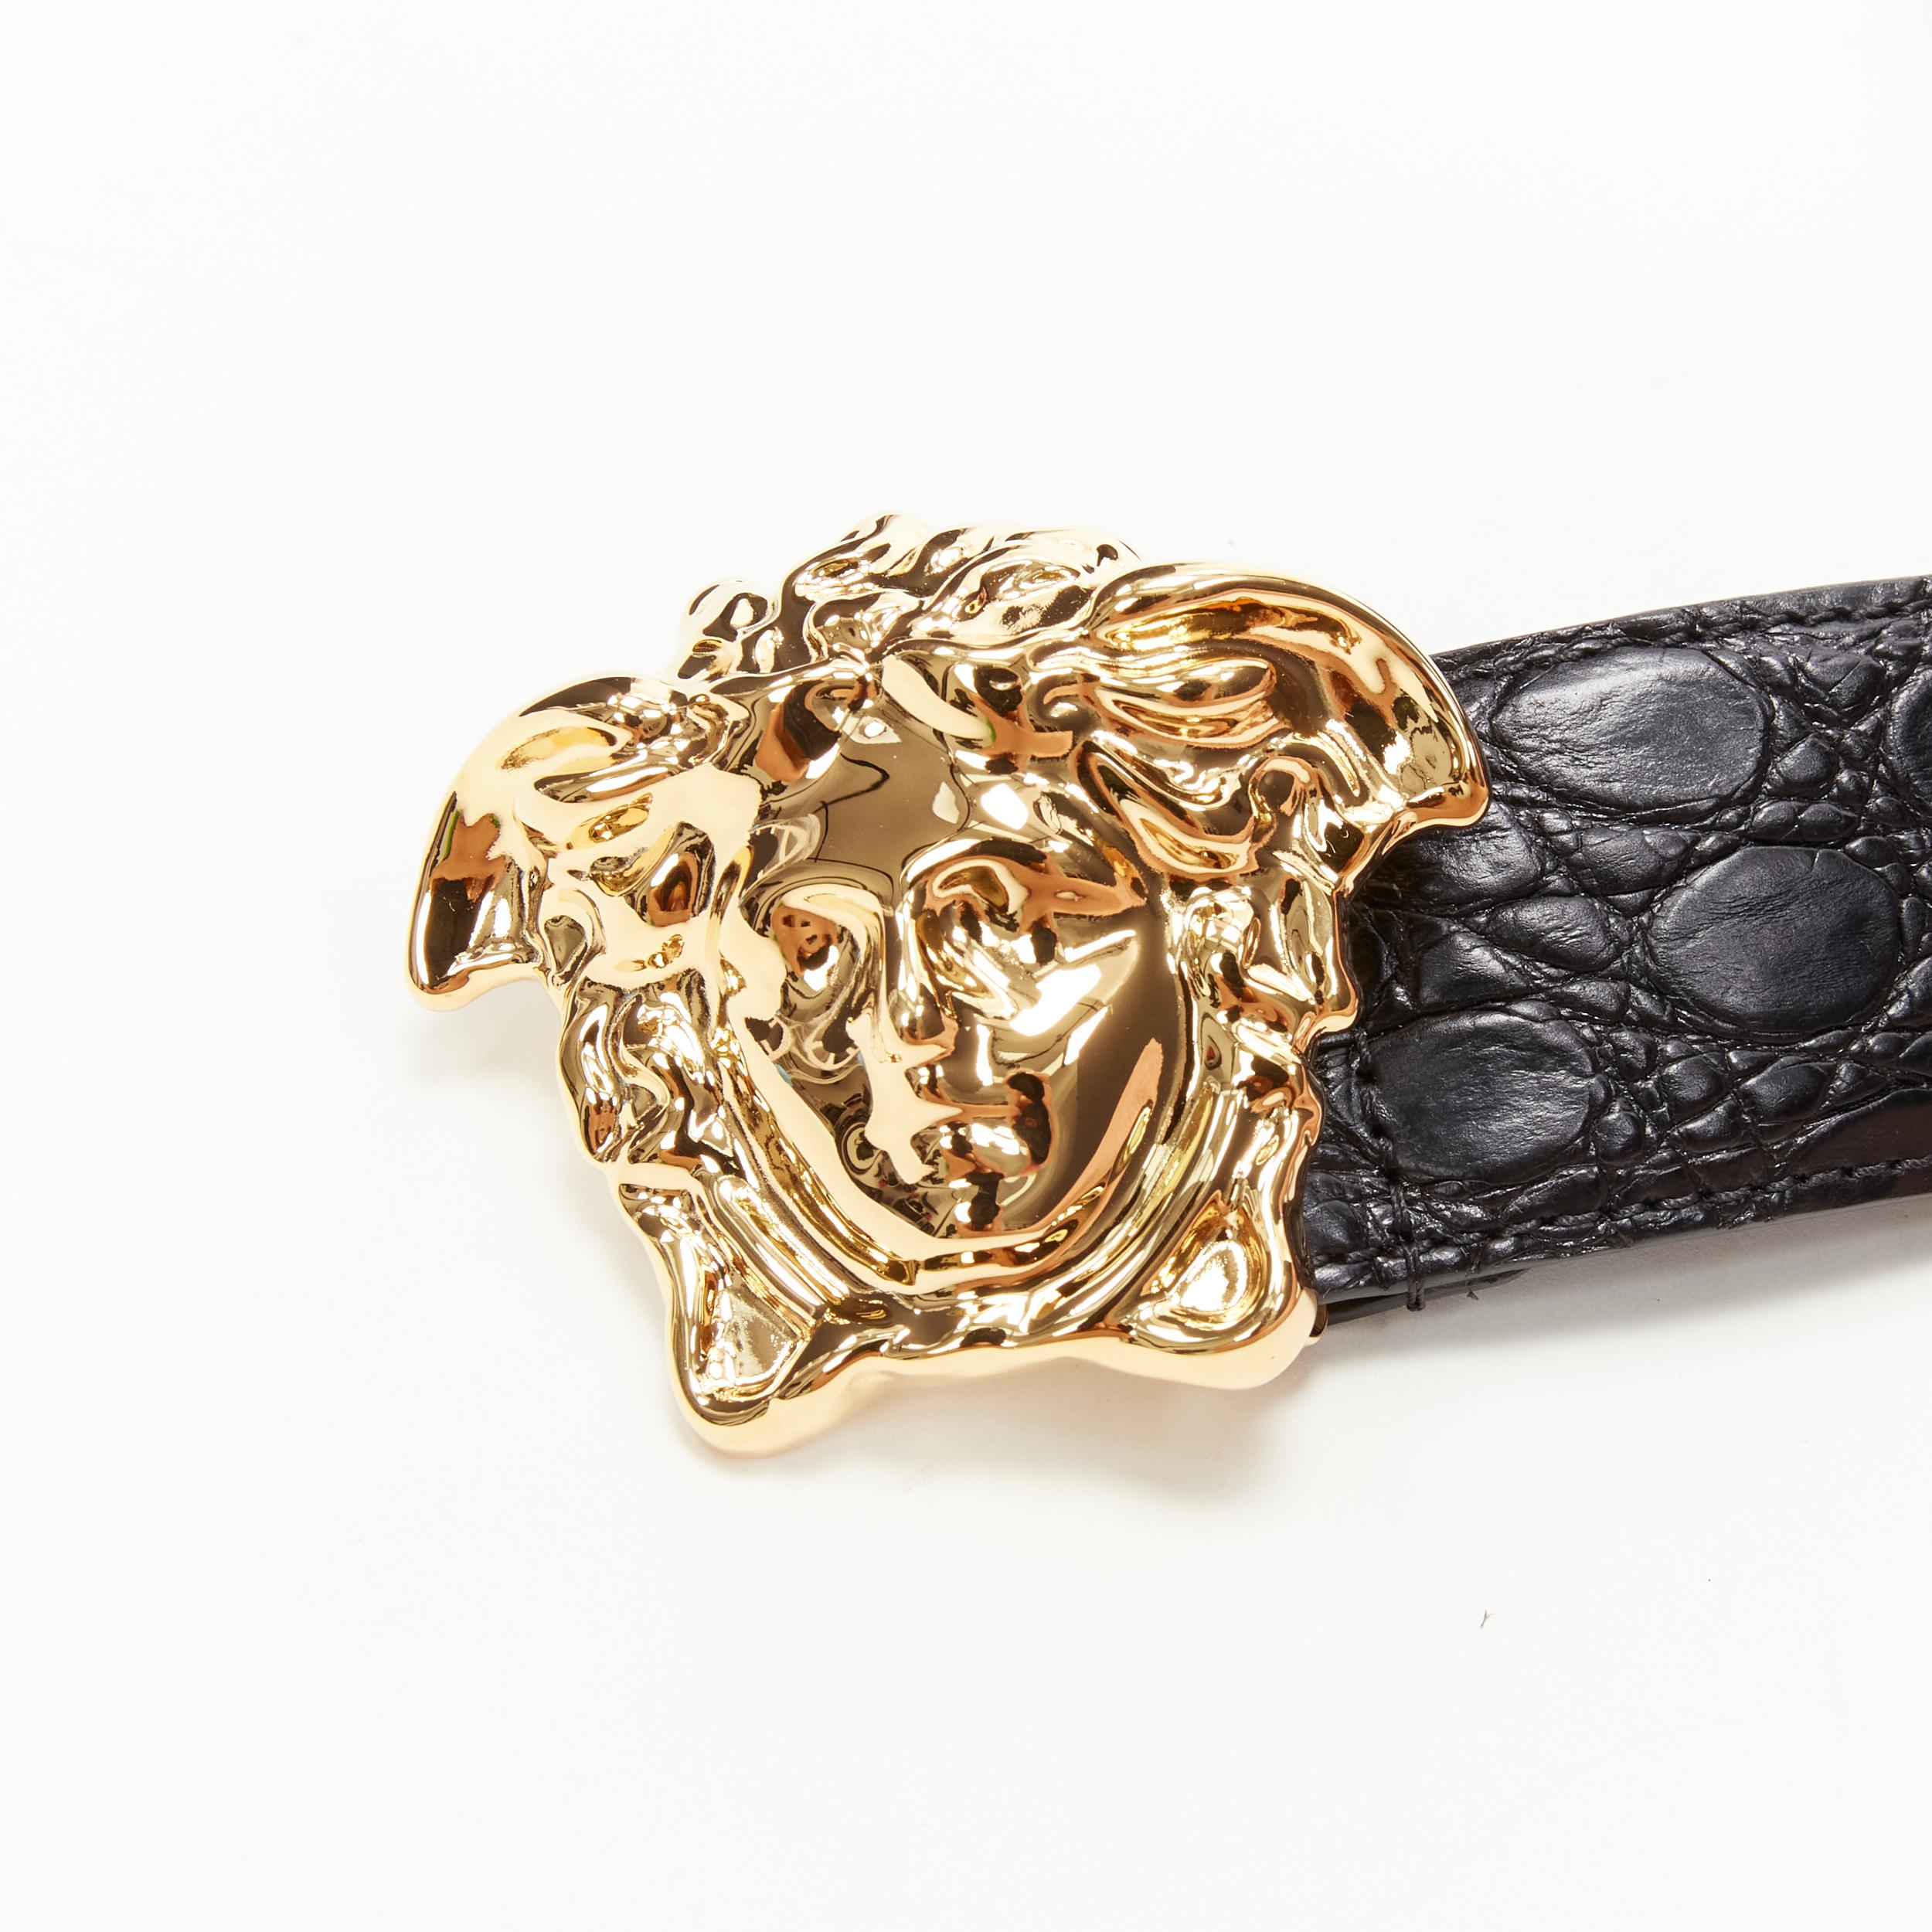 Men's new VERSACE $1200 La Medusa gold buckle black croc leather belt 115cm 44-48